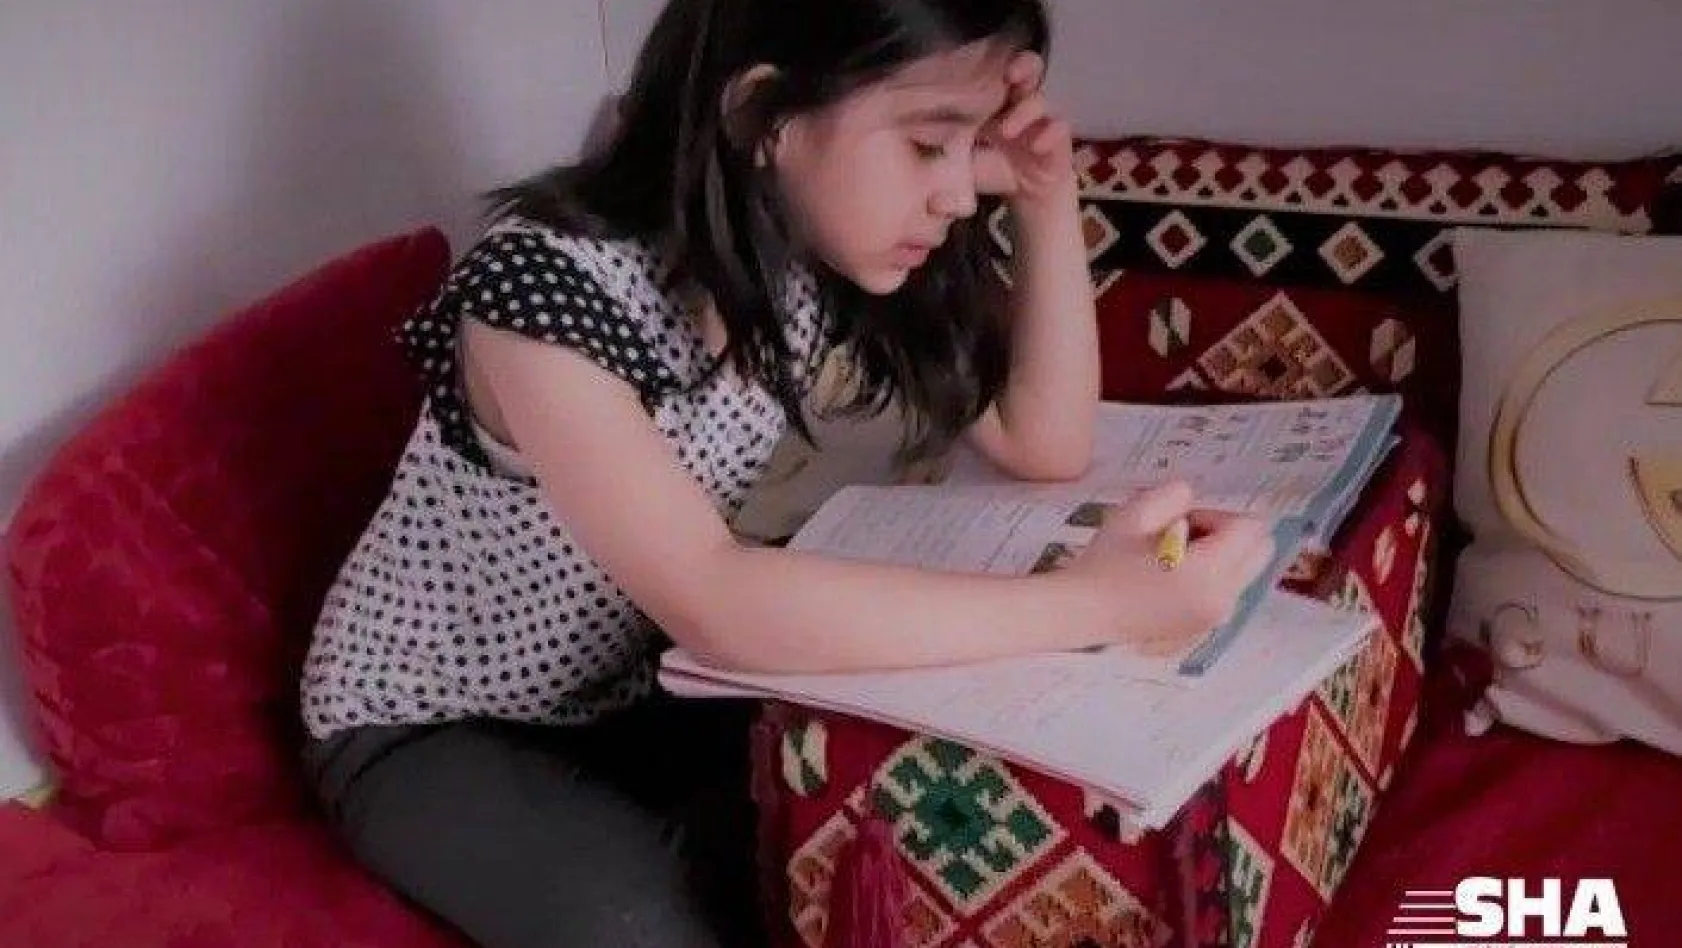 Göçmen Afgan çocuk Asinat'ın eğitim endişesi